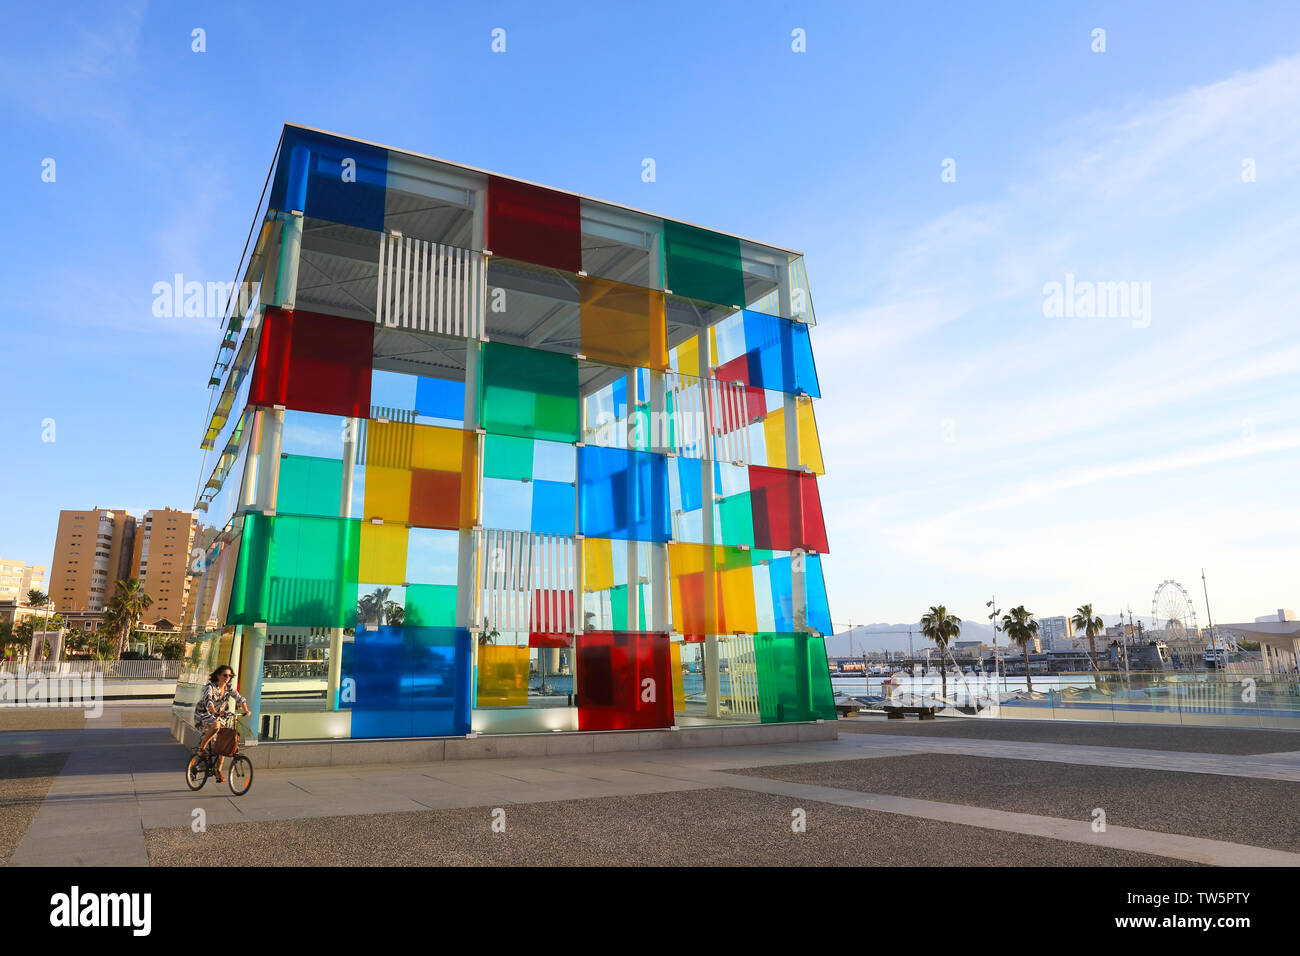 Das Centre Pompidou Malaga, ein Ableger der Pariser Museum für zeitgenössische Kunst, in Muelle Uno, durch den Hafen, in Spanien, Europa Stockfoto